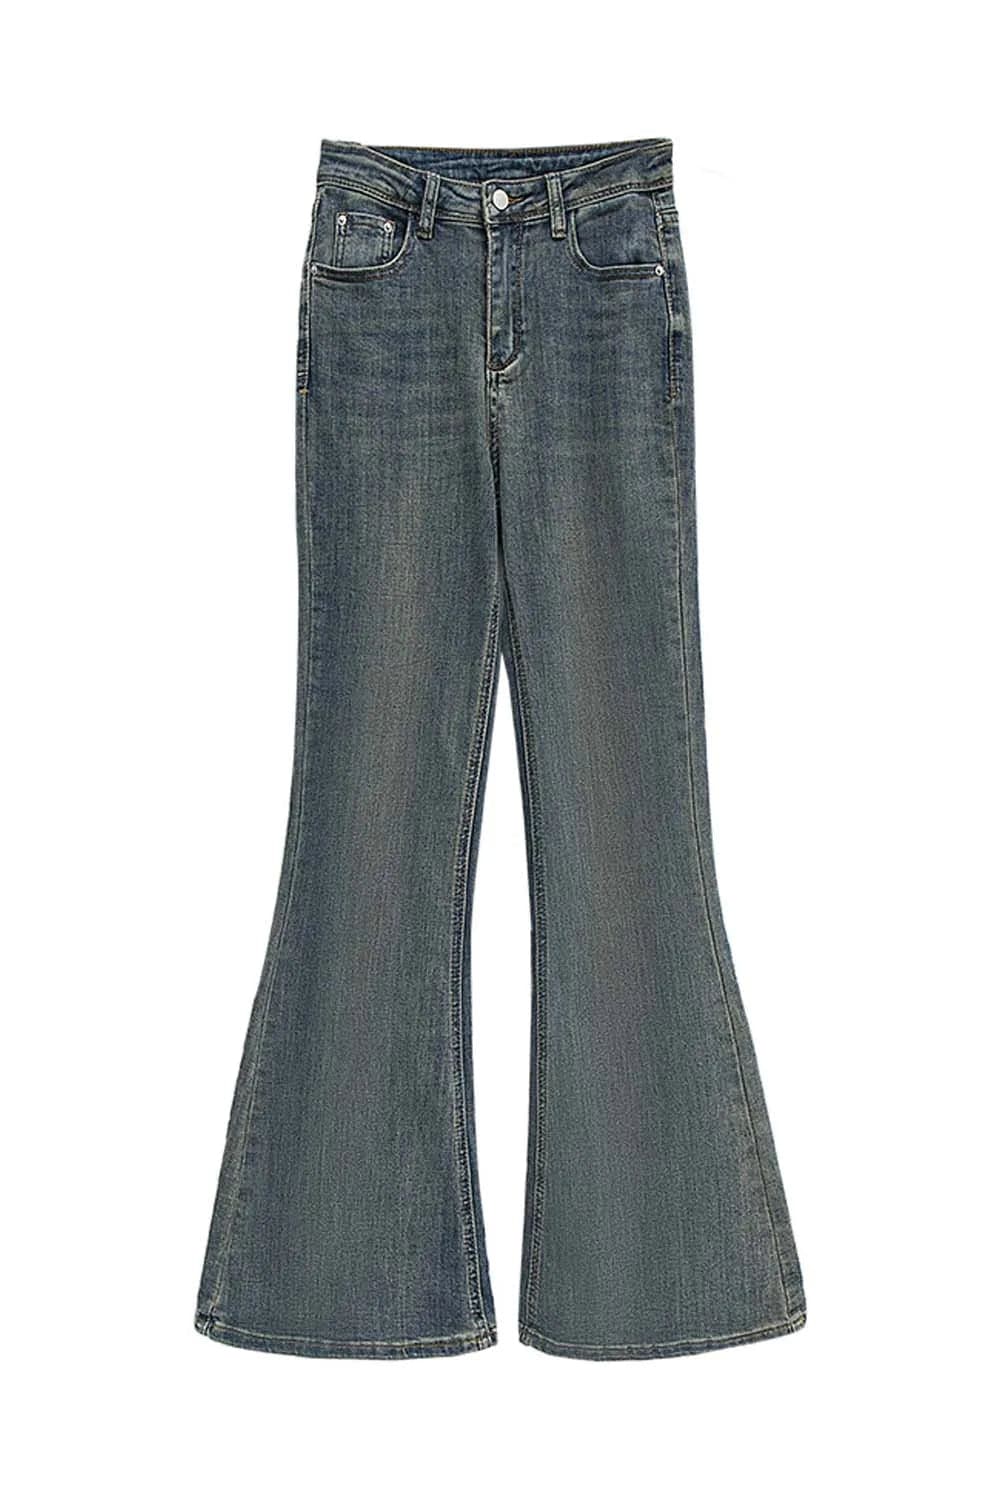 Seluar Jeans Berkobar Vintaj yang bergaya